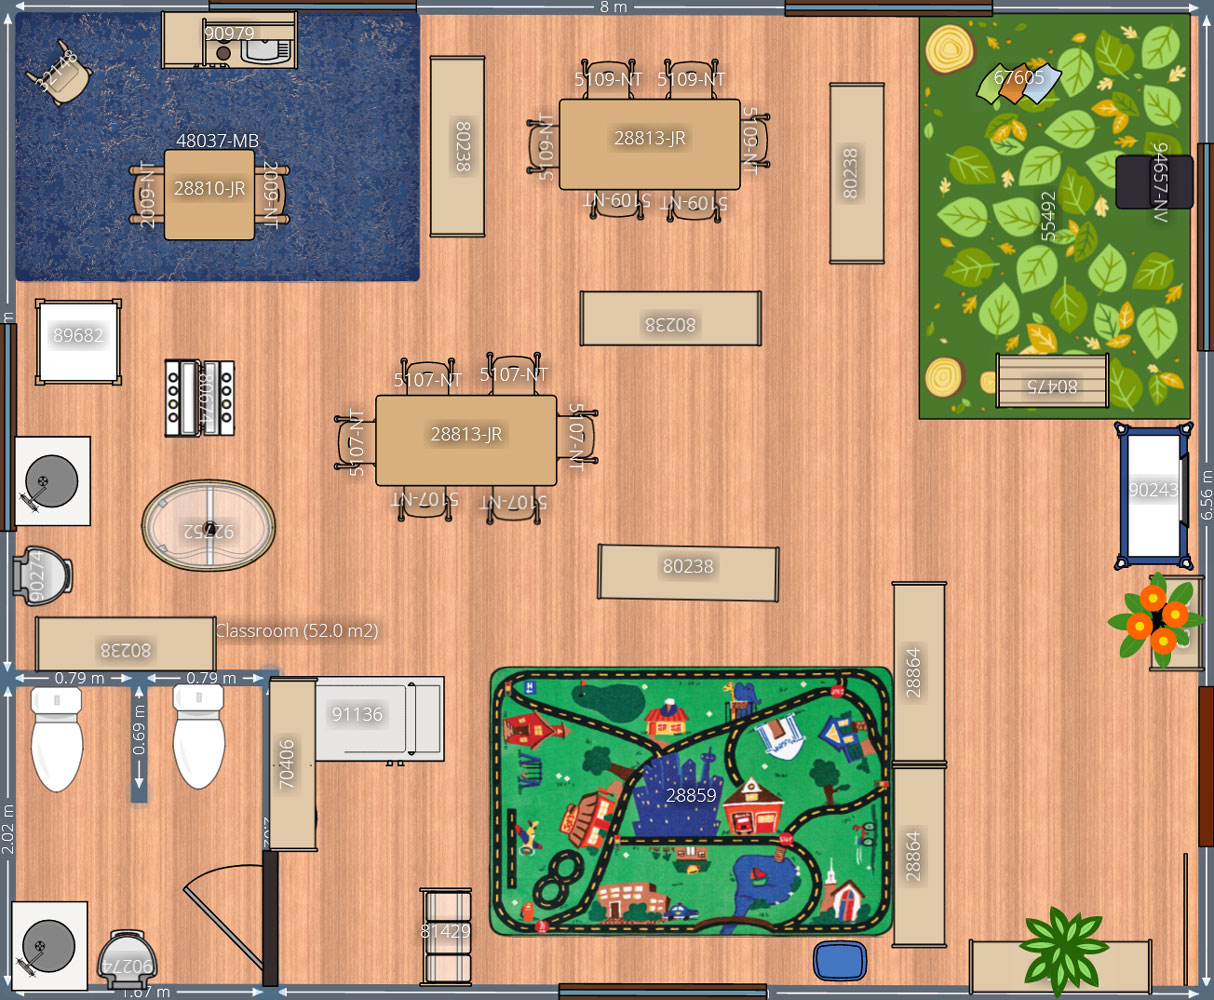 kindergarten classroom floor plan